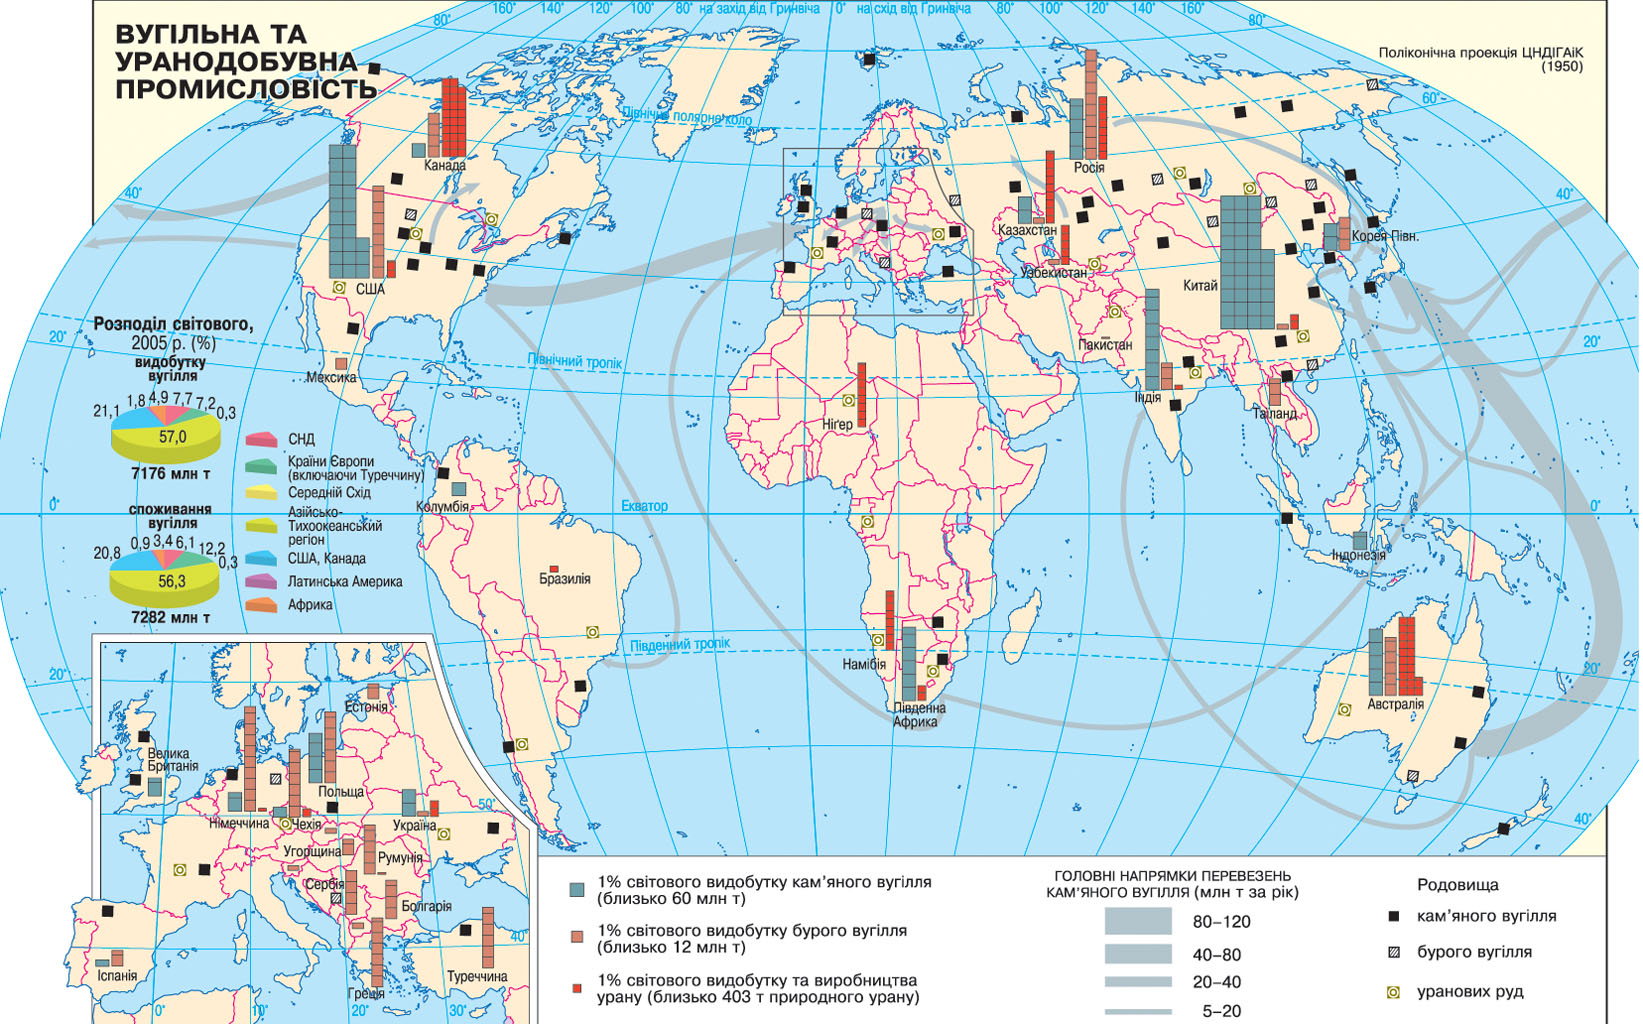 Большие запасы каменного угля. Карта добычи каменного угля в мире. Крупнейшие мировые центры добычи нефти газа угля на карте. Запасы каменного угля в мире карта.